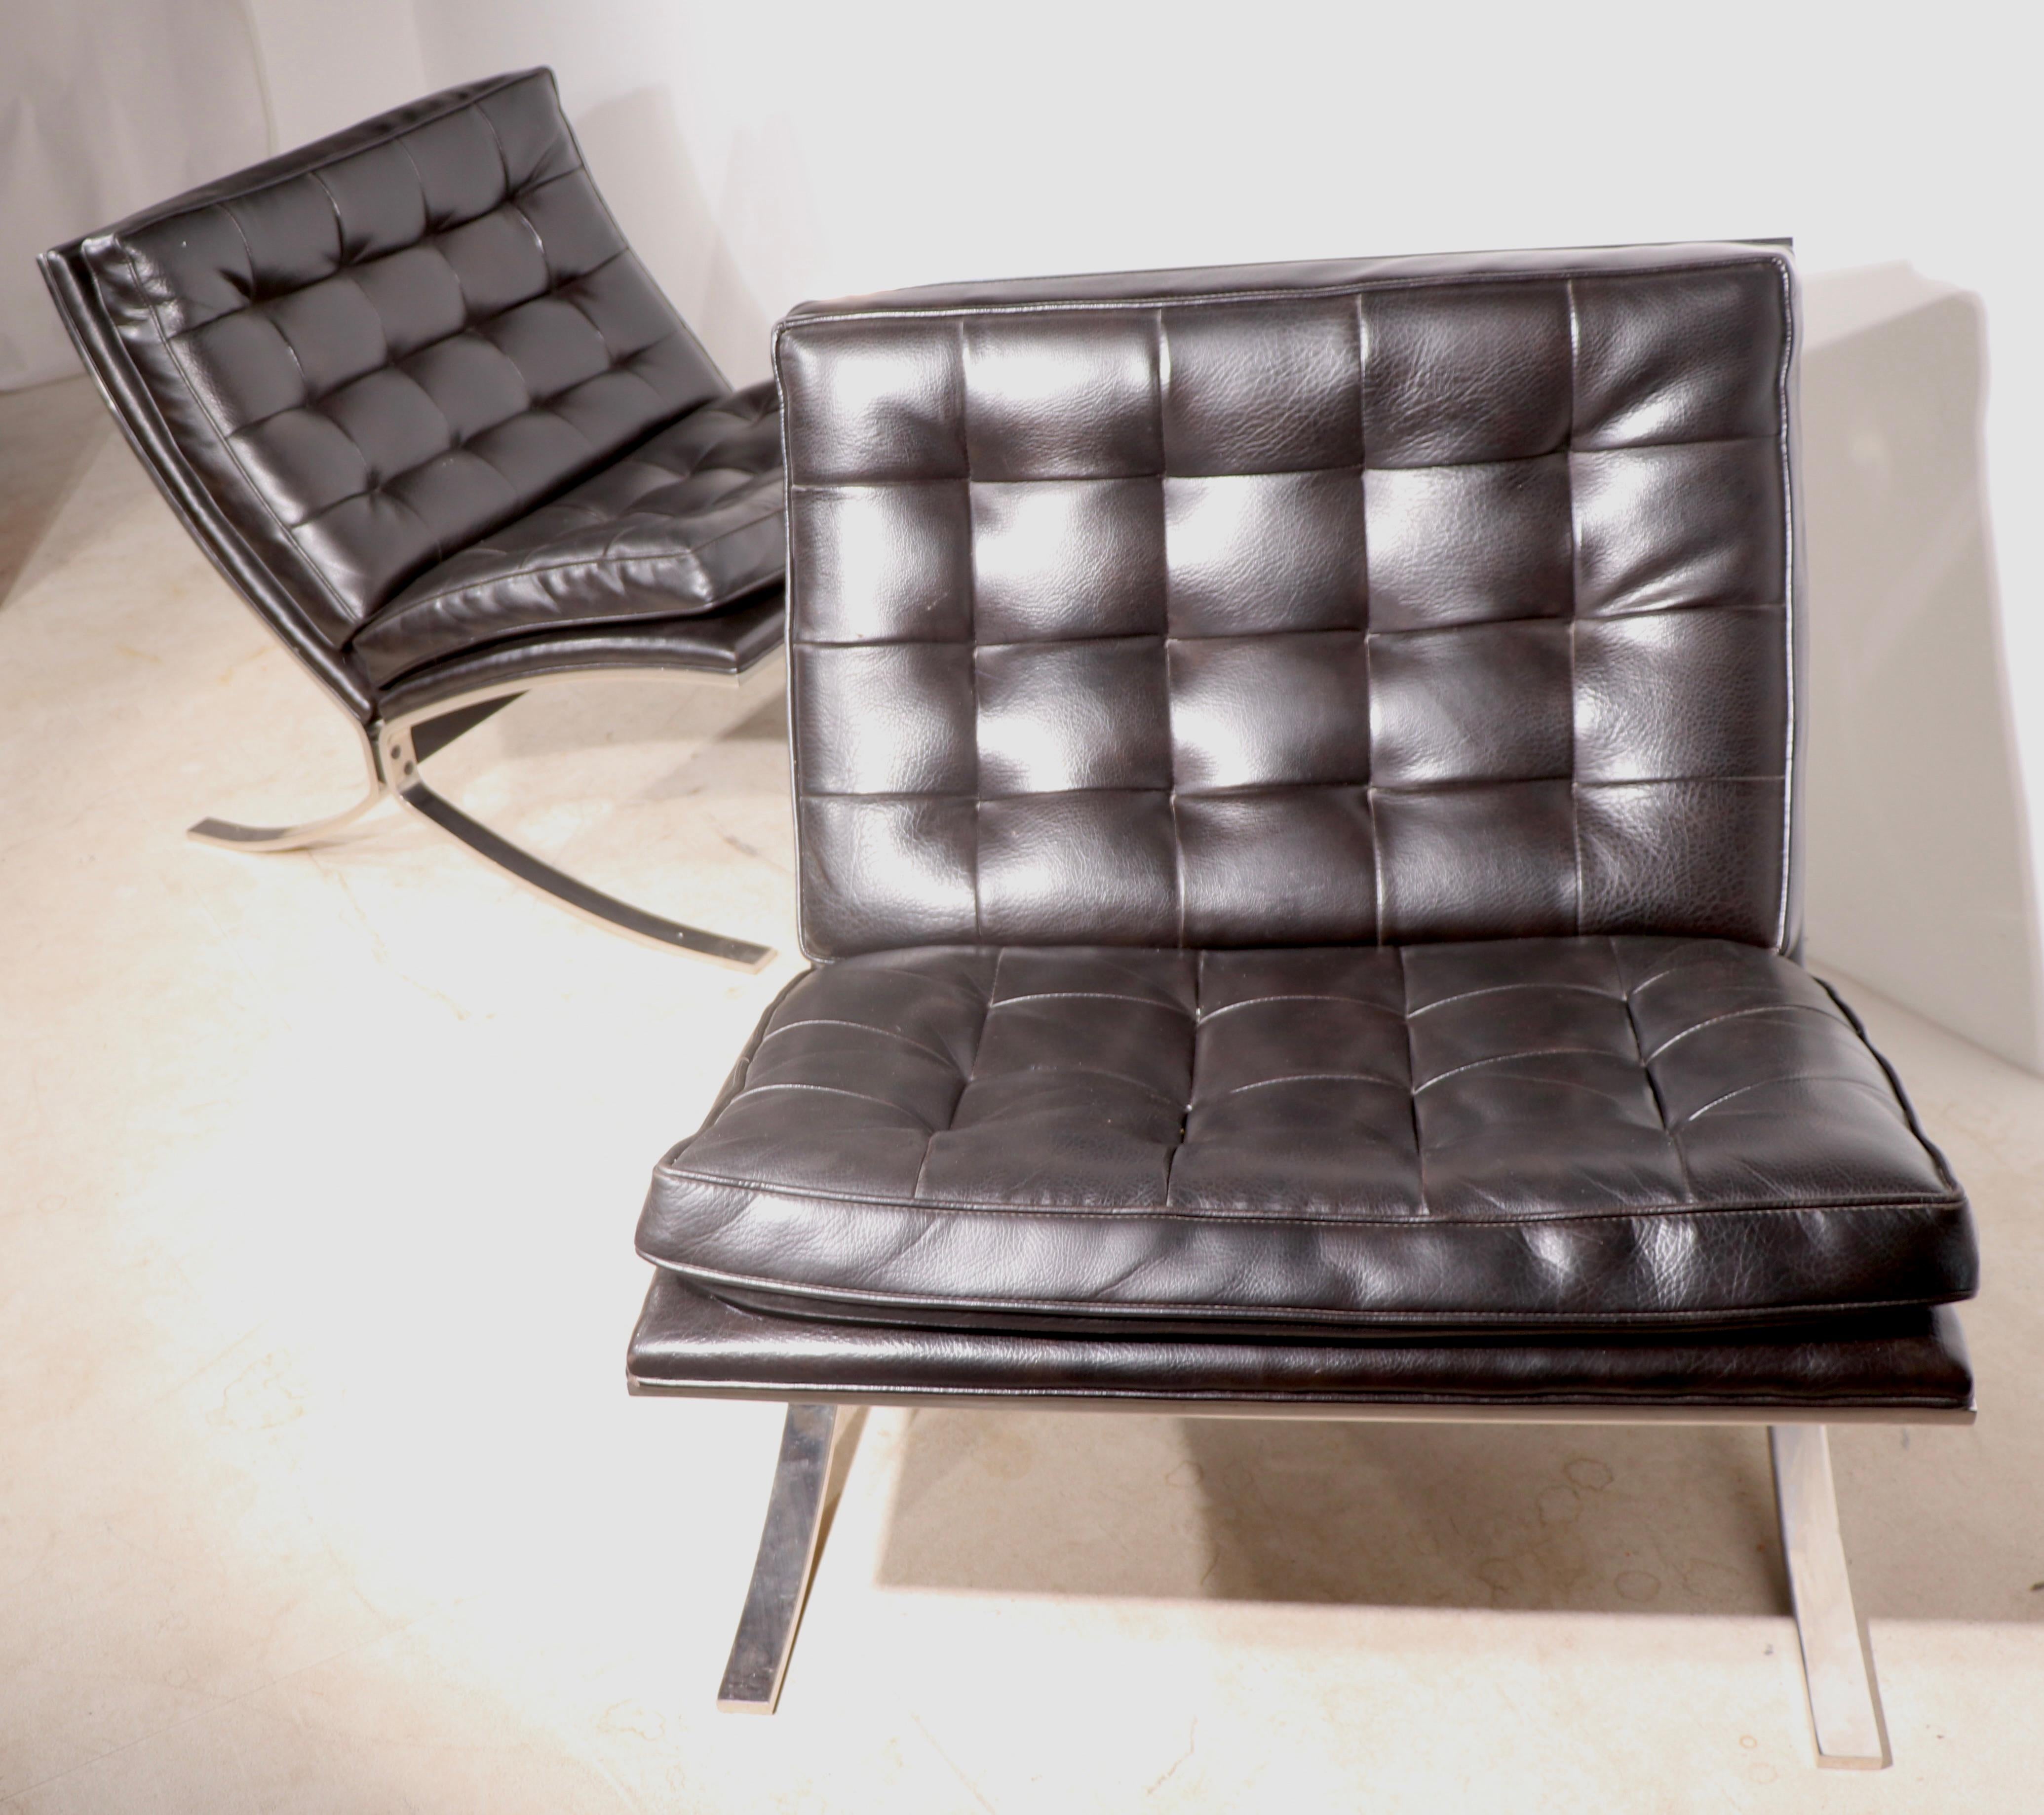 Seltenes Paar Loungesessel im Barcelona-Stil, entworfen von Kipp Stewart für Drexel. Wie der ikonische Mies-Stuhl, aber in der in Amerika entworfenen und hergestellten Version. Diese Stühle  sind sehr viel schwieriger zu bekommen, da die Produktion